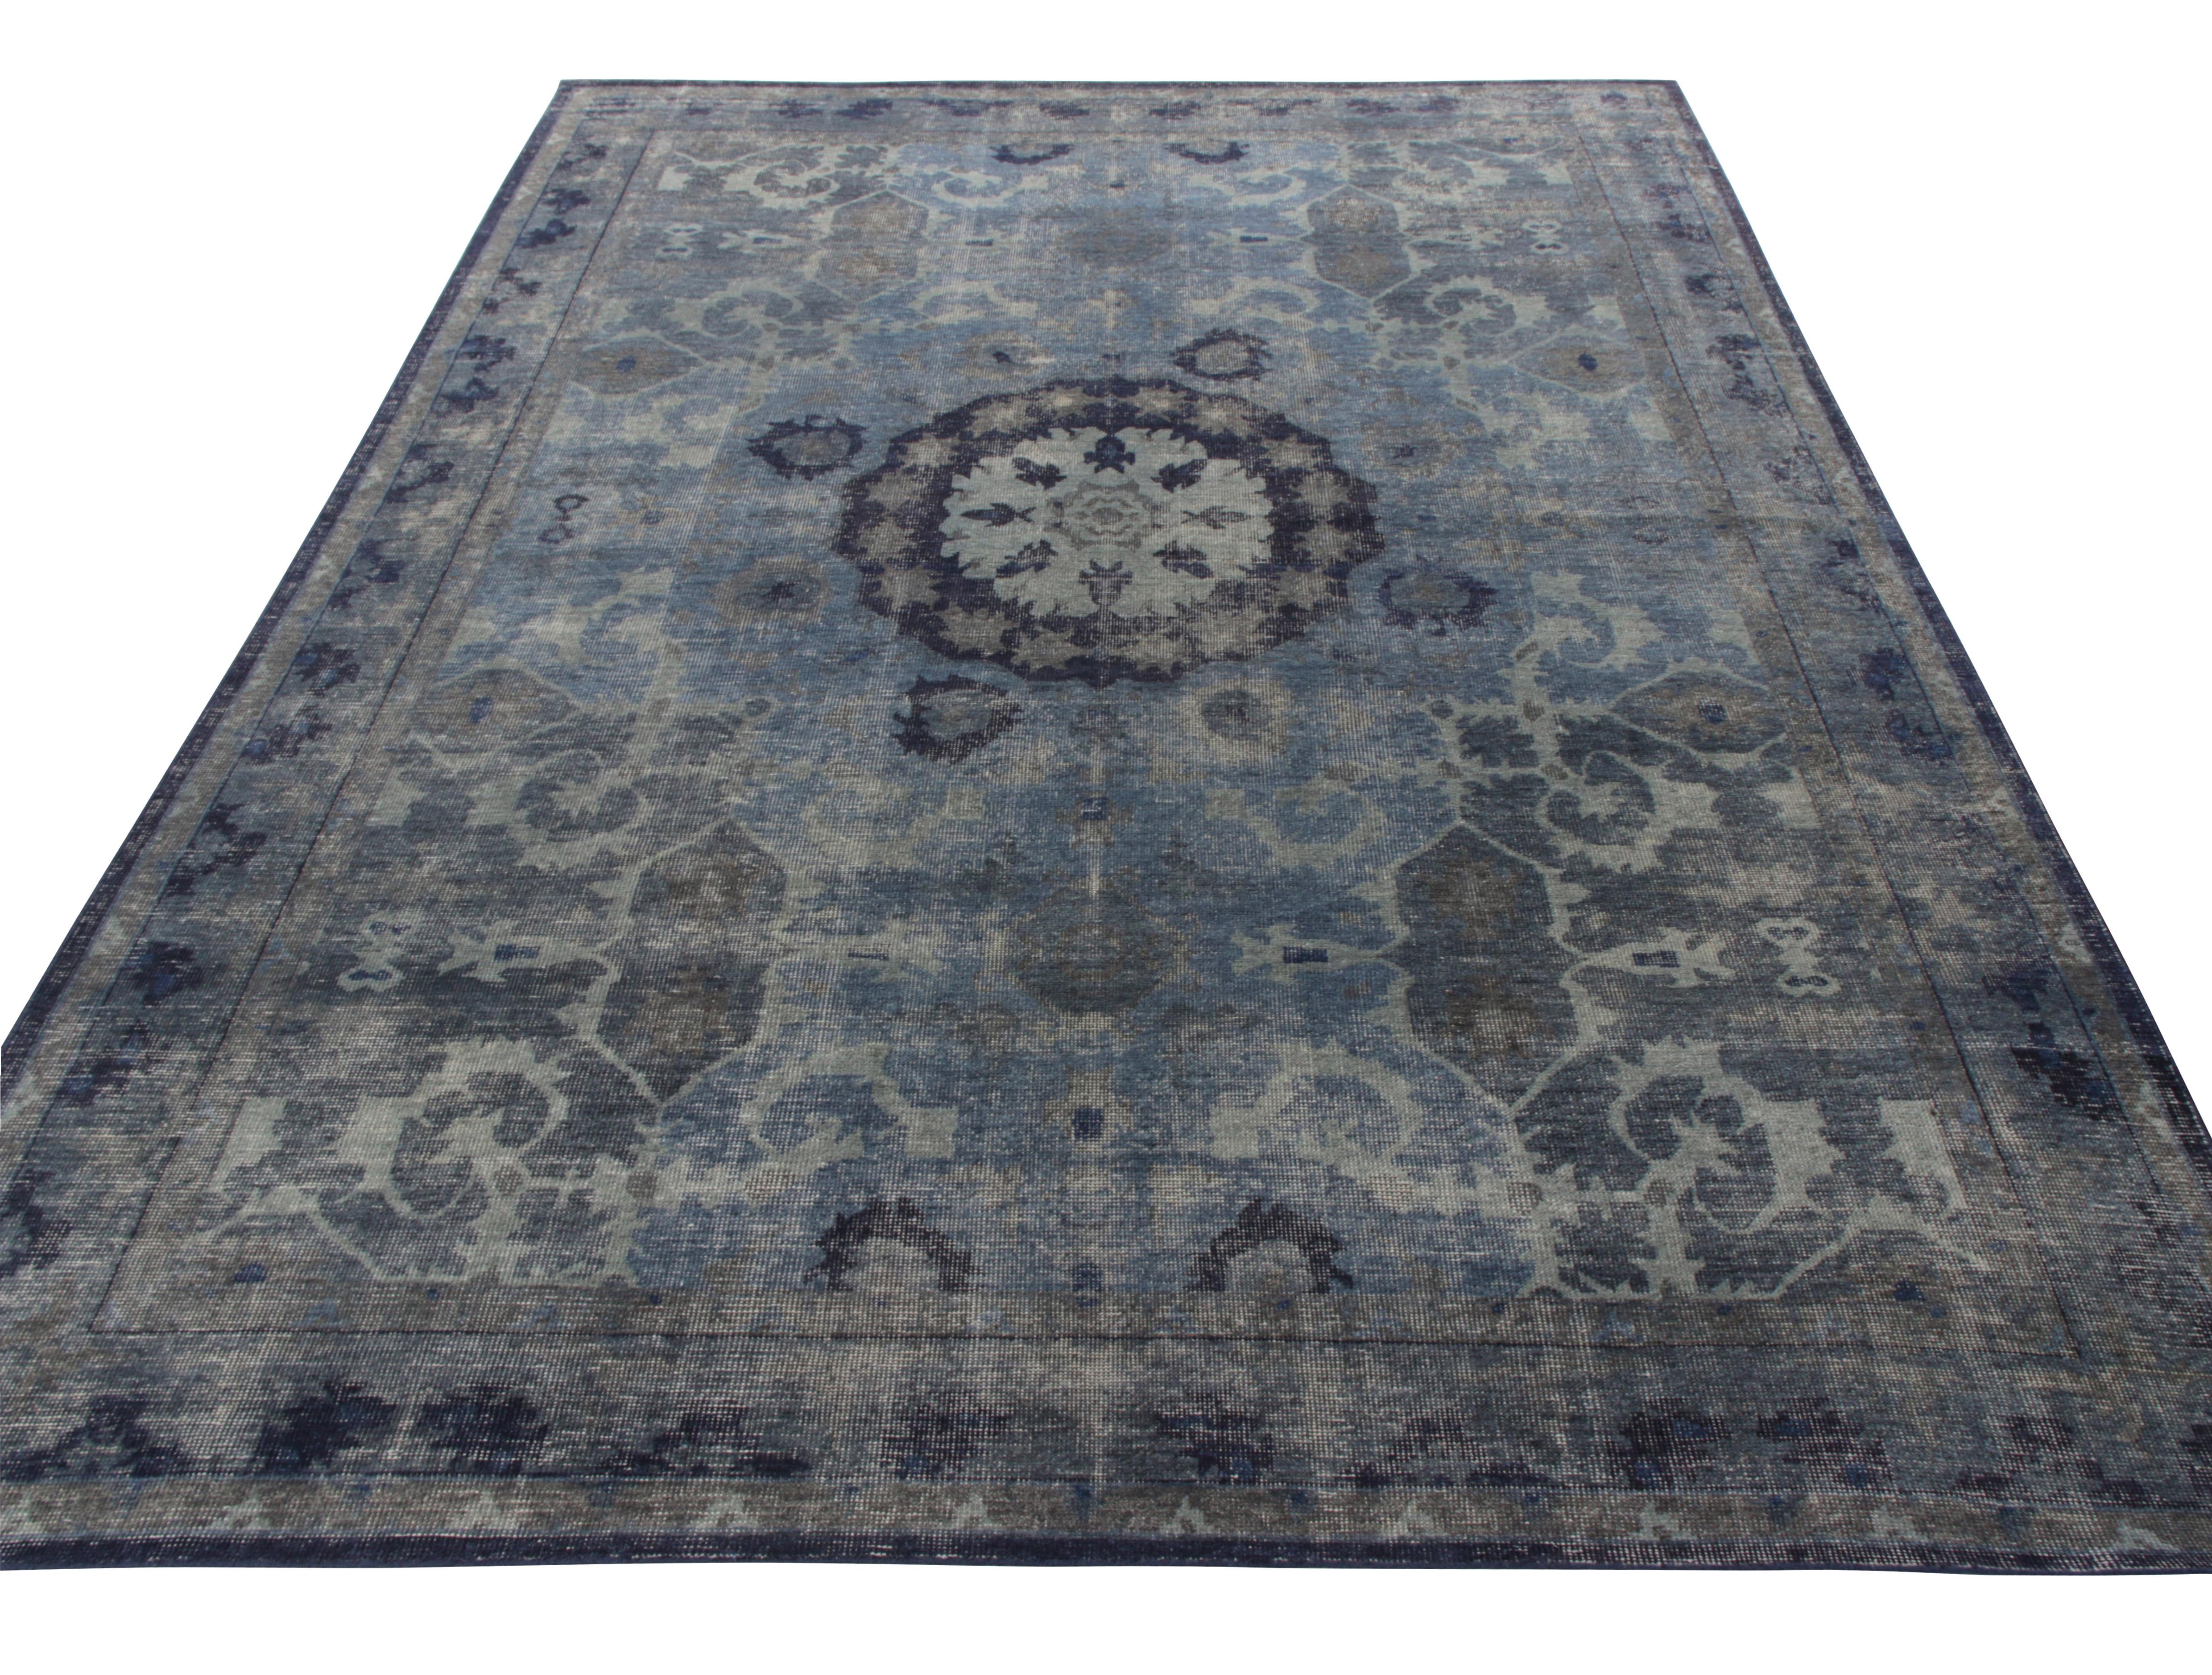 Ein wunderschöner 10x14 handgeknüpfter Teppich im Distressed-Stil aus der Homage Collection'S von Rug & Kilim. Inspiriert vom klassischen orientalischen Stil, weist der Teppich ein auffälliges Medaillonmuster auf, das von einem subtilen Blumenmuster